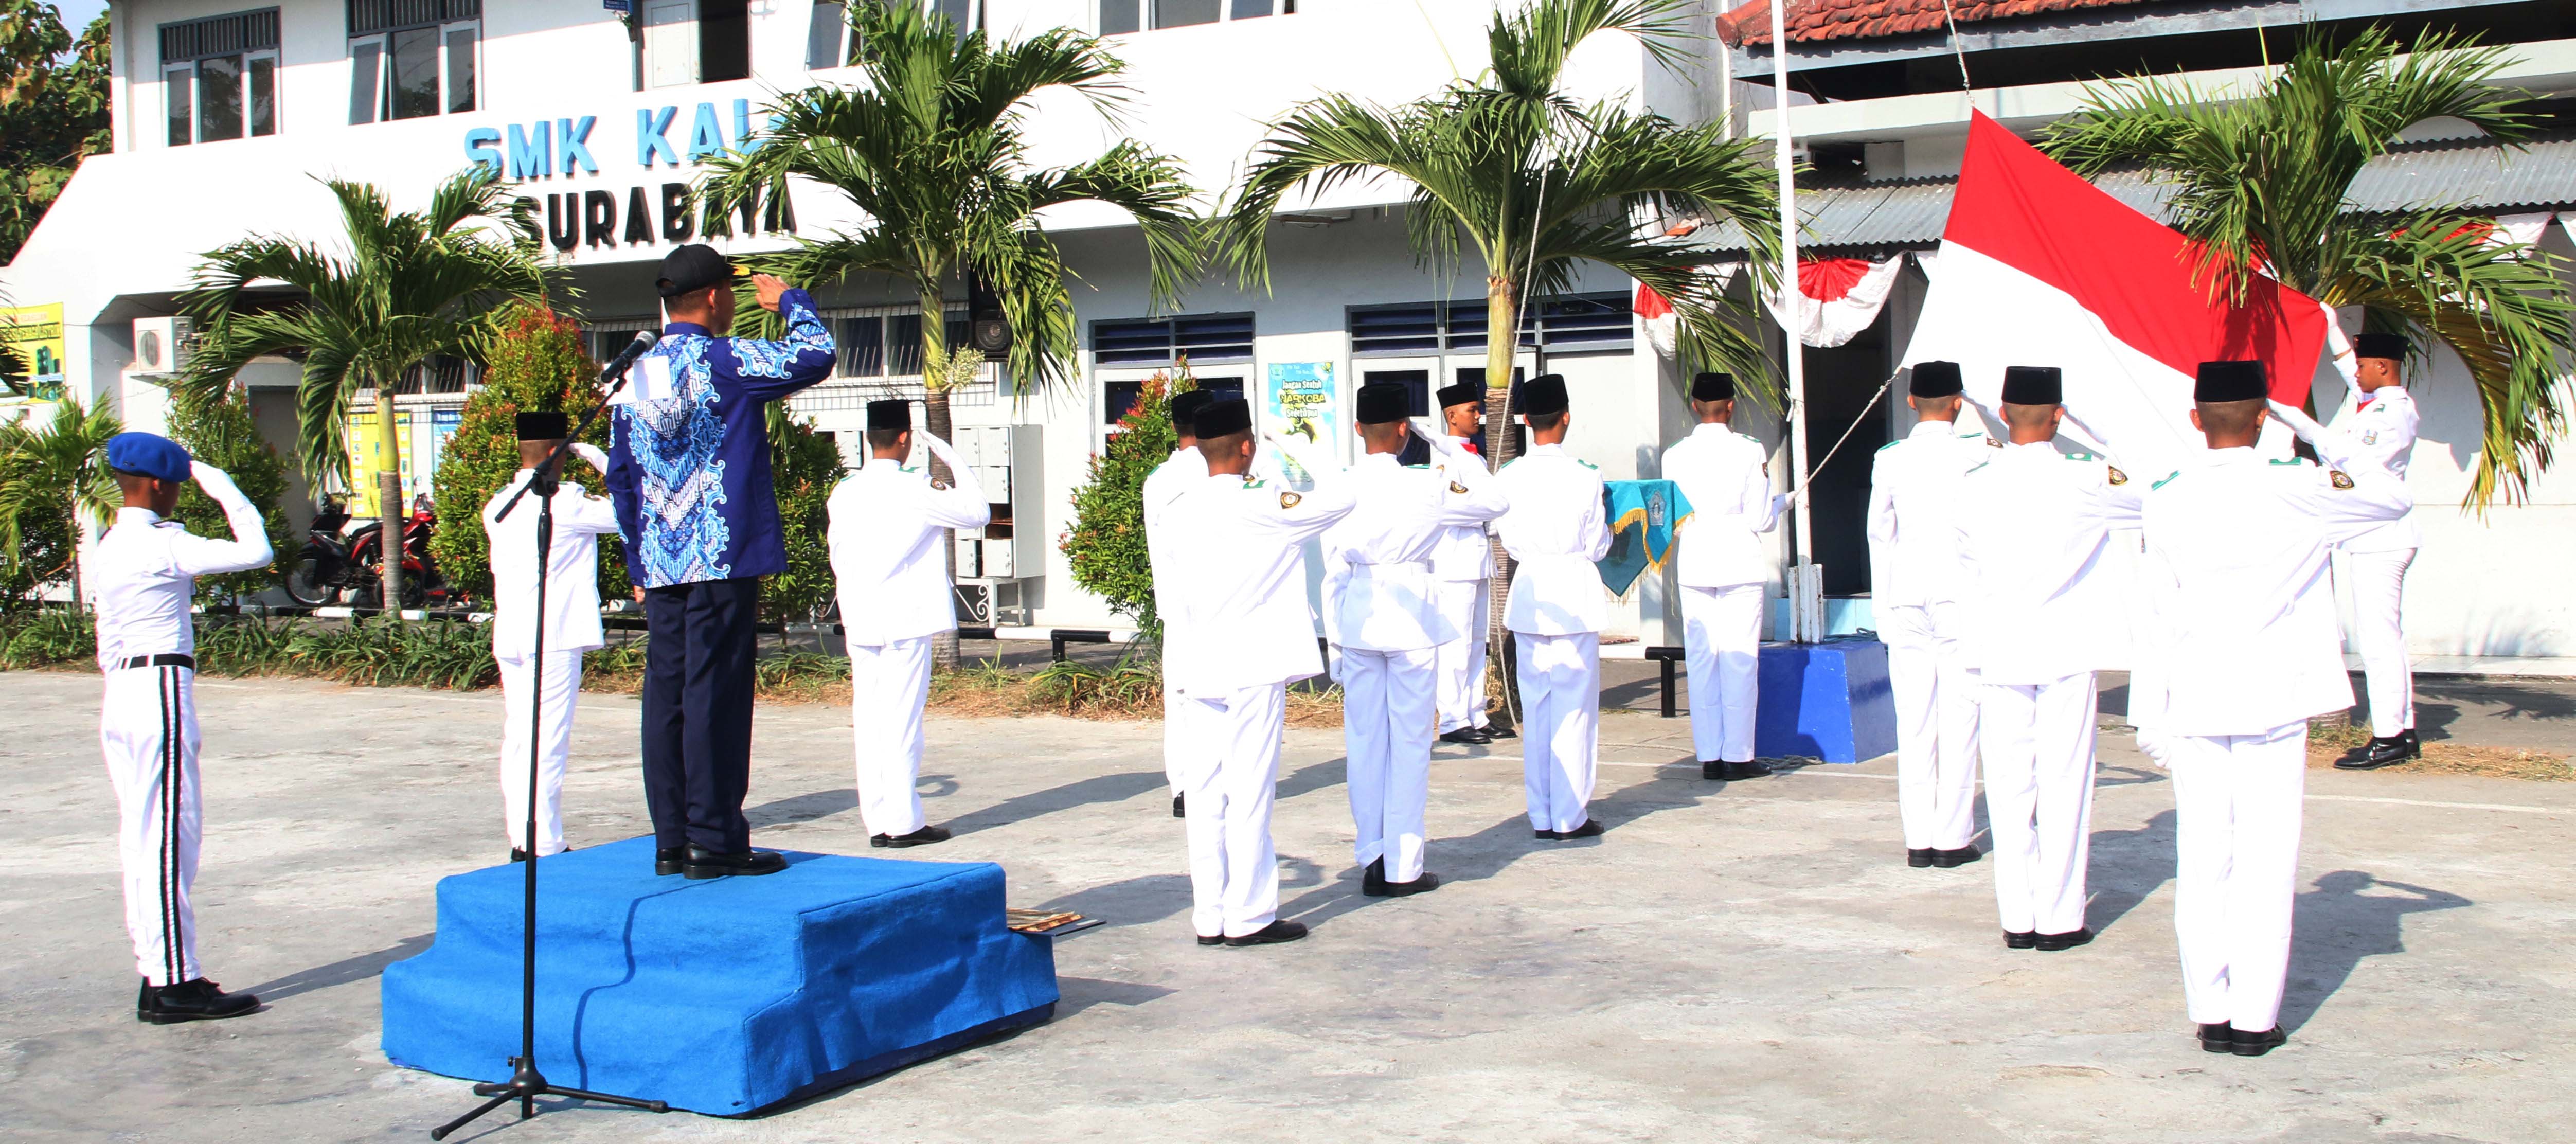 PENGHORMATAN : Kepala Sekolah SMK KAL-1 Drs Burhan,M.Pd memimpin penghormatan kepada bendera merah putih  saat upacara peringatan HUT Kemerdekaan RI ke-72